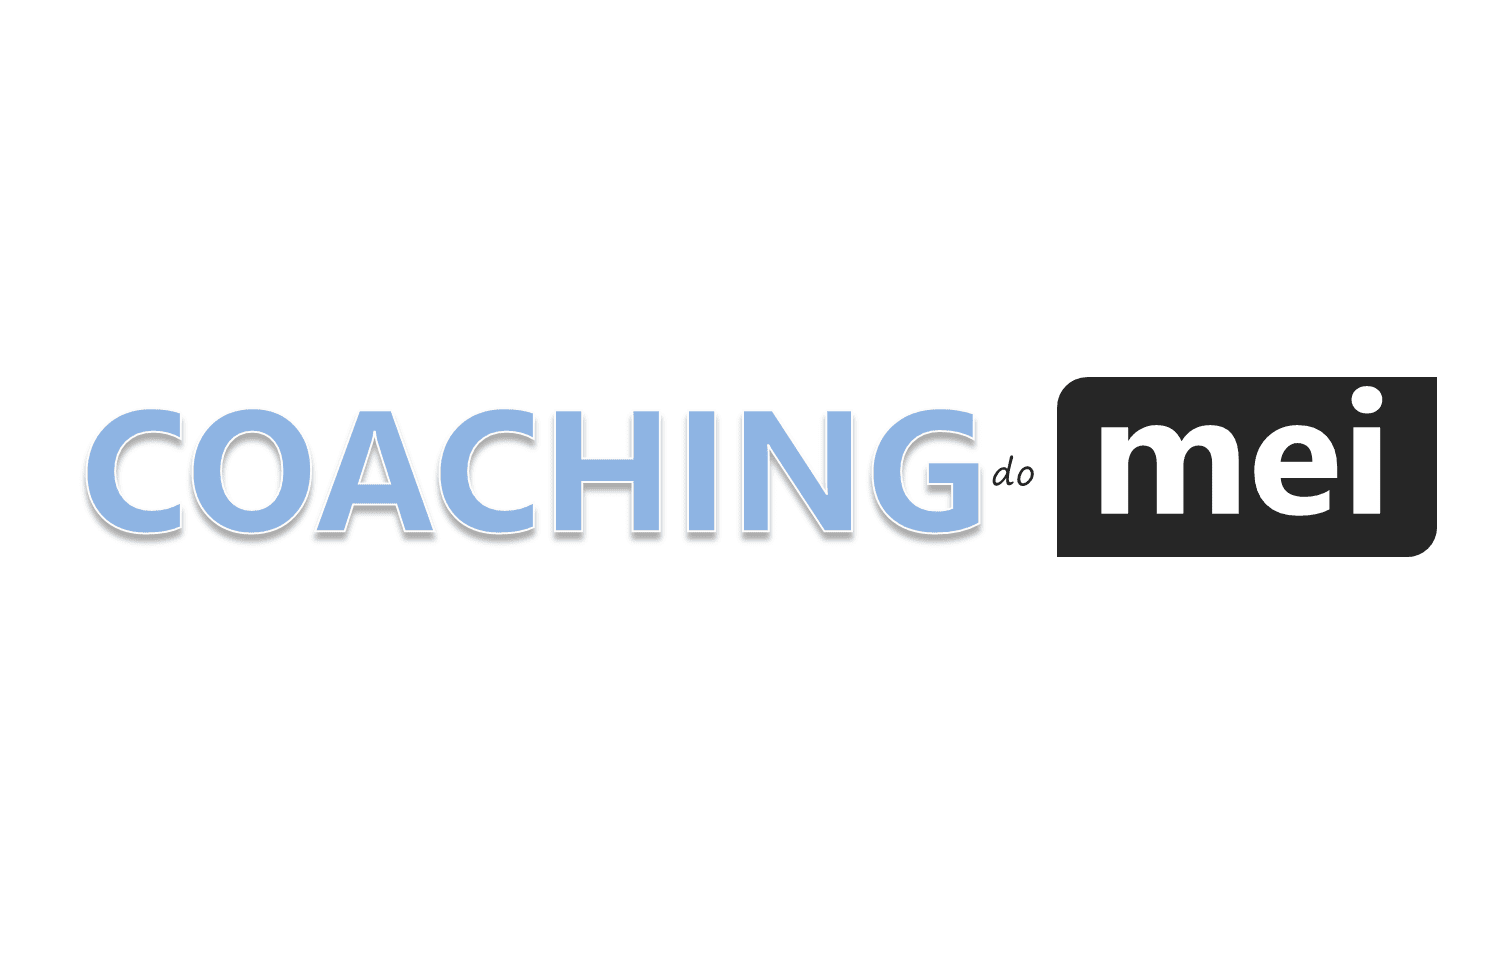 Coaching do MEI